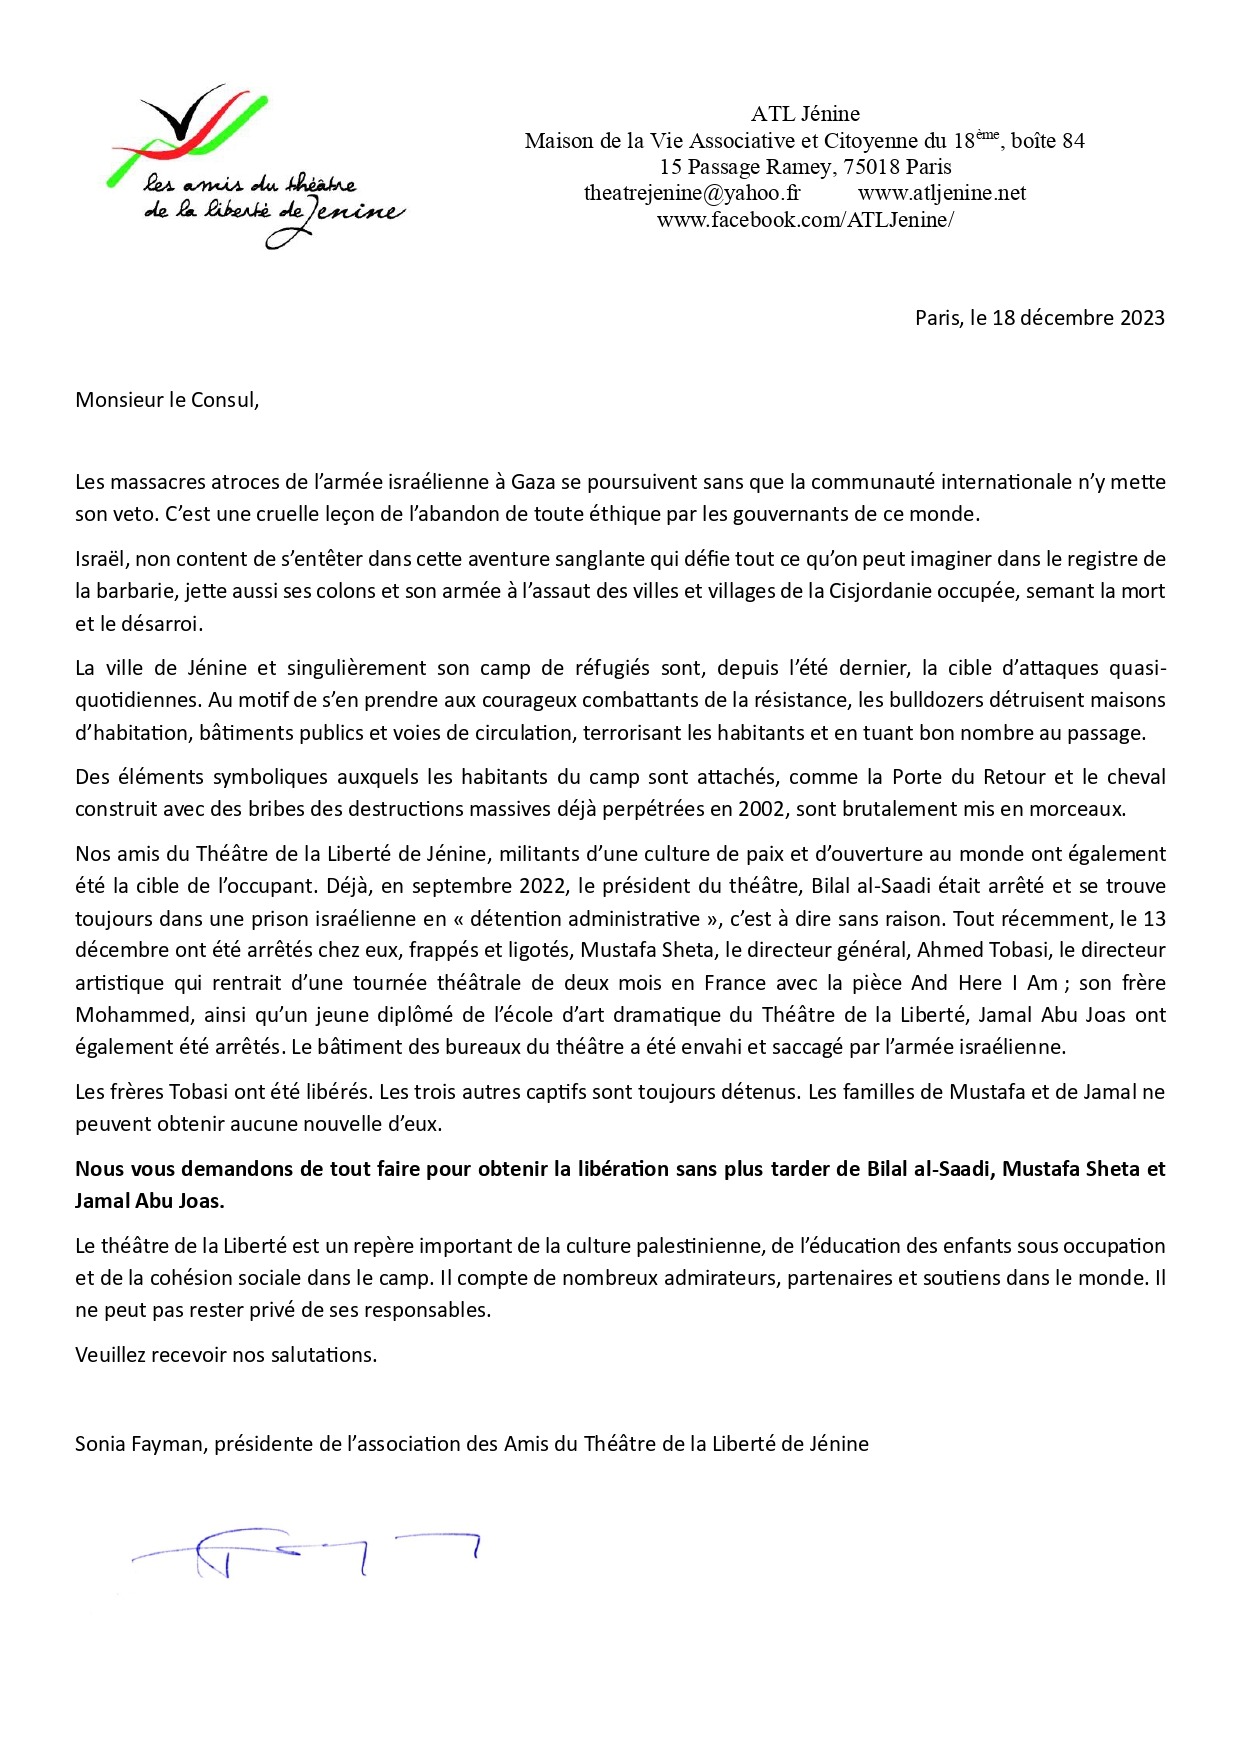 Lettre ouverte au Consul de France à Jérusalem pour demander la libération de Mustafa Sheta, Bilal Al- Saadi et Jamal Abu Joas membres du Freedom Theatre - Les amis du théâtre de la Liberté de Jénine